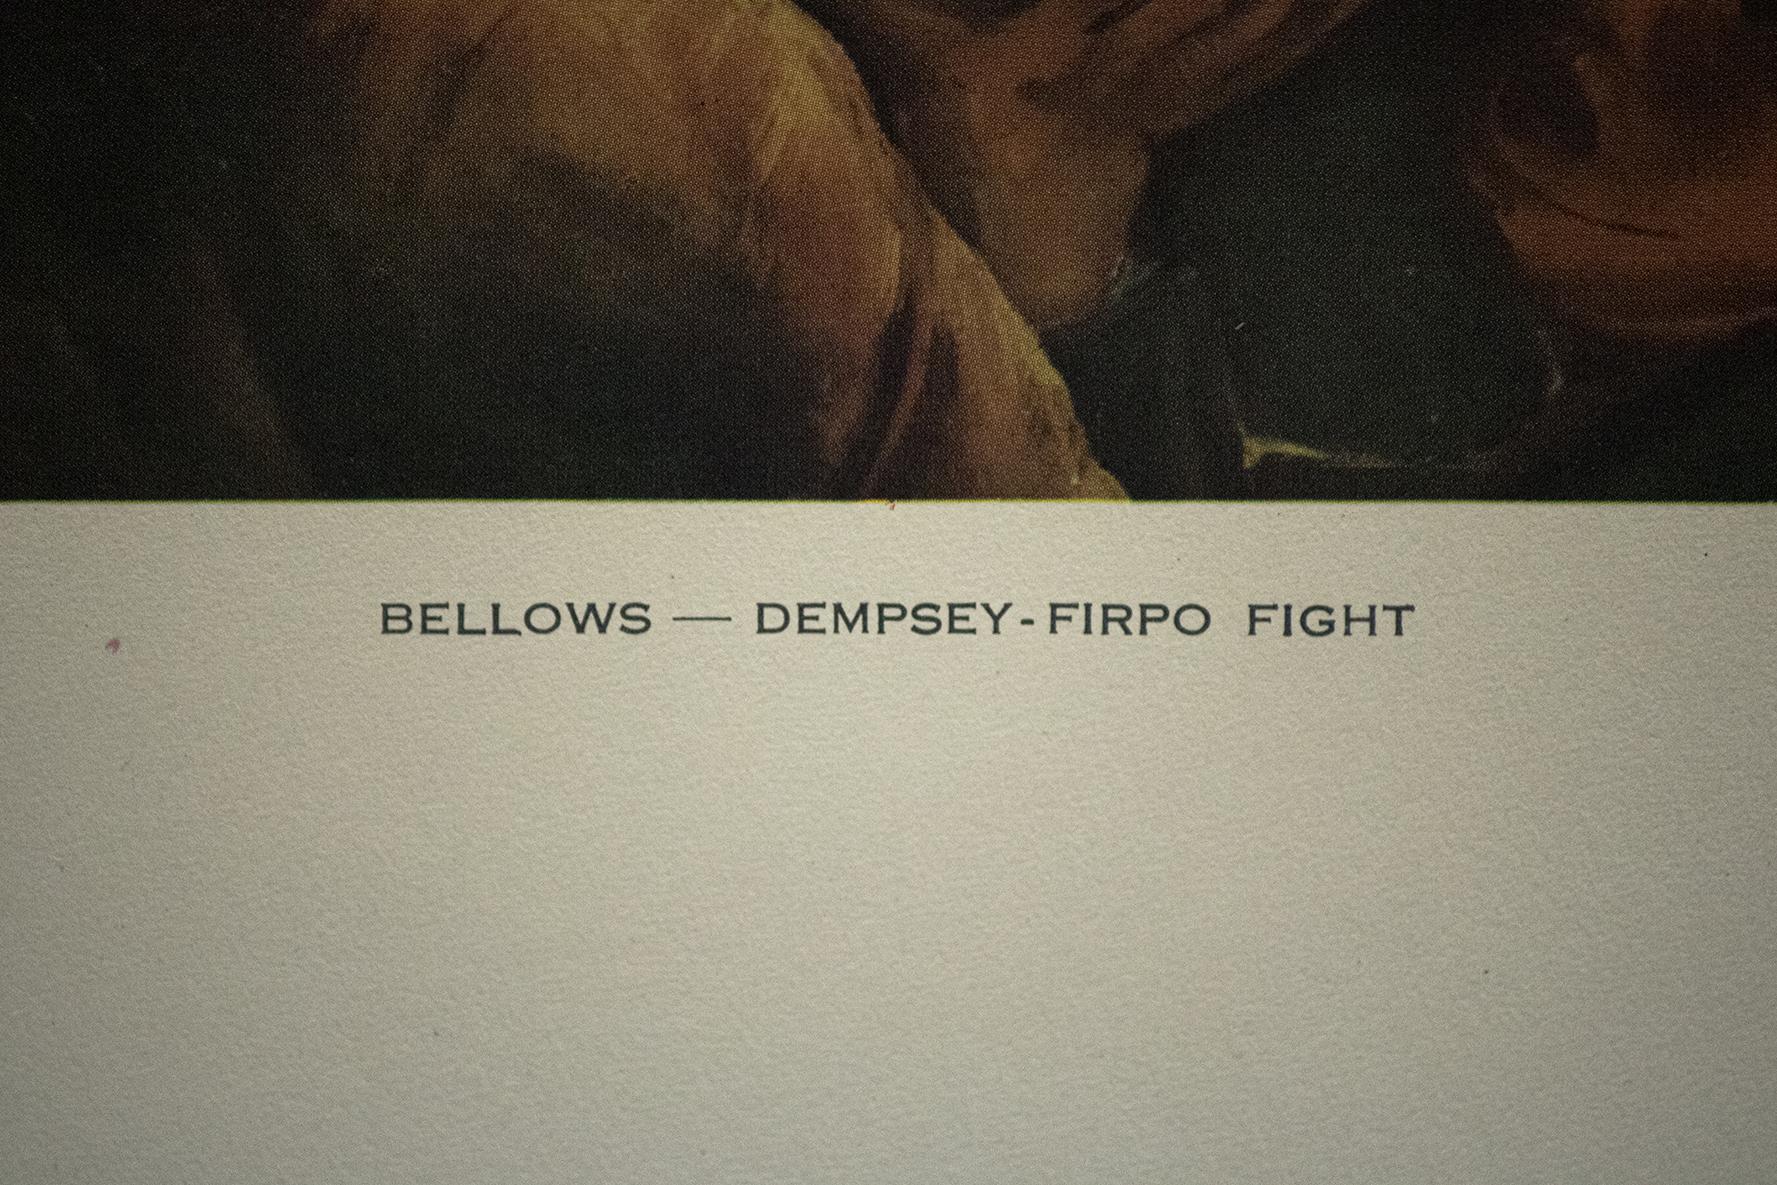 dempsey firpo fight